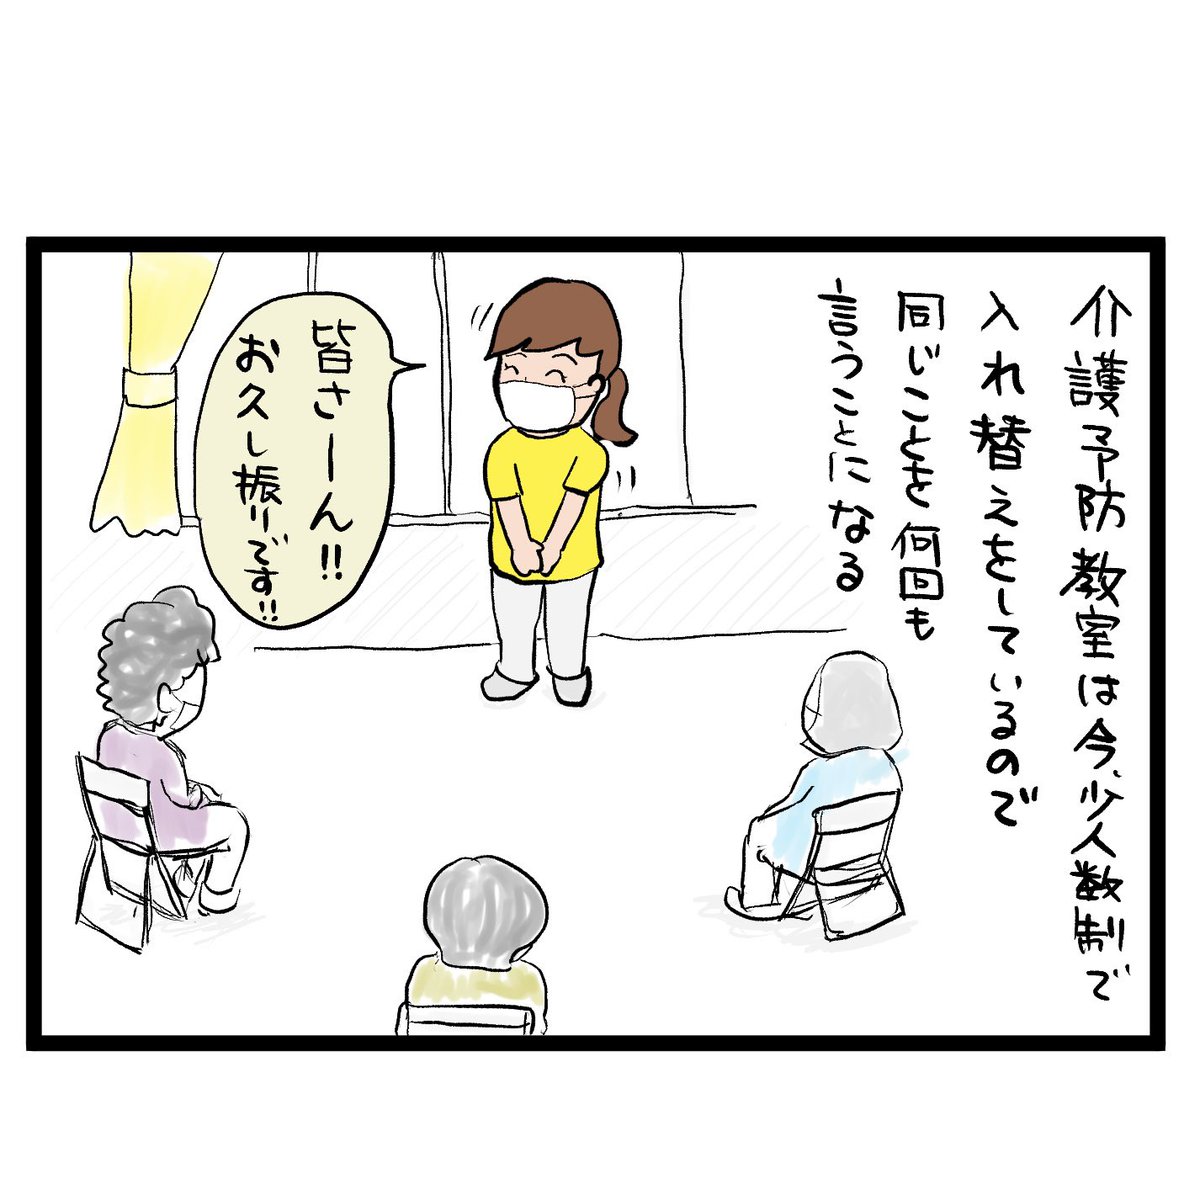 #四コマ漫画
#介護予防教室
久しぶりの仕事 